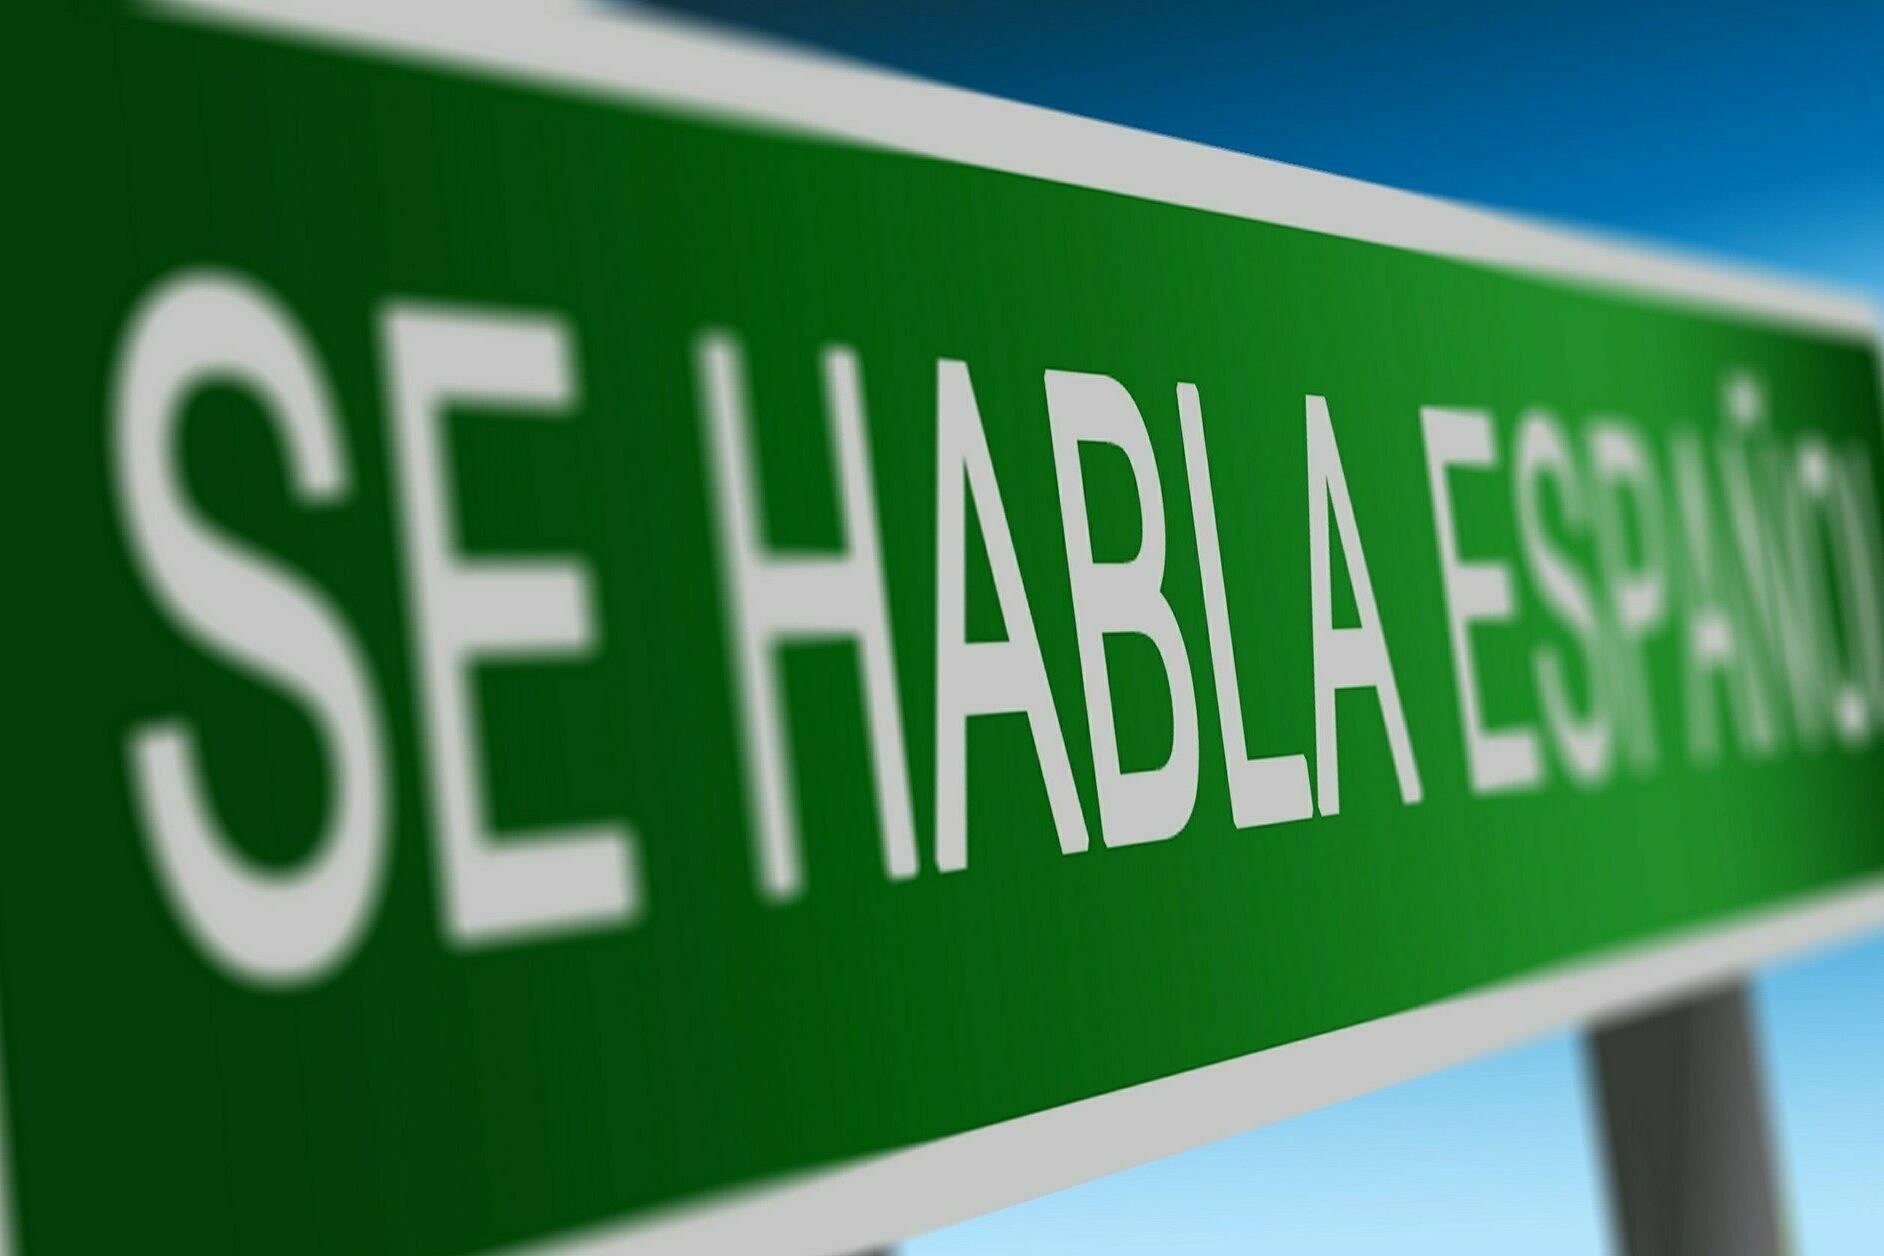 Grünes Schild mit der Aufschrift "SE HABLA ESPANOL".